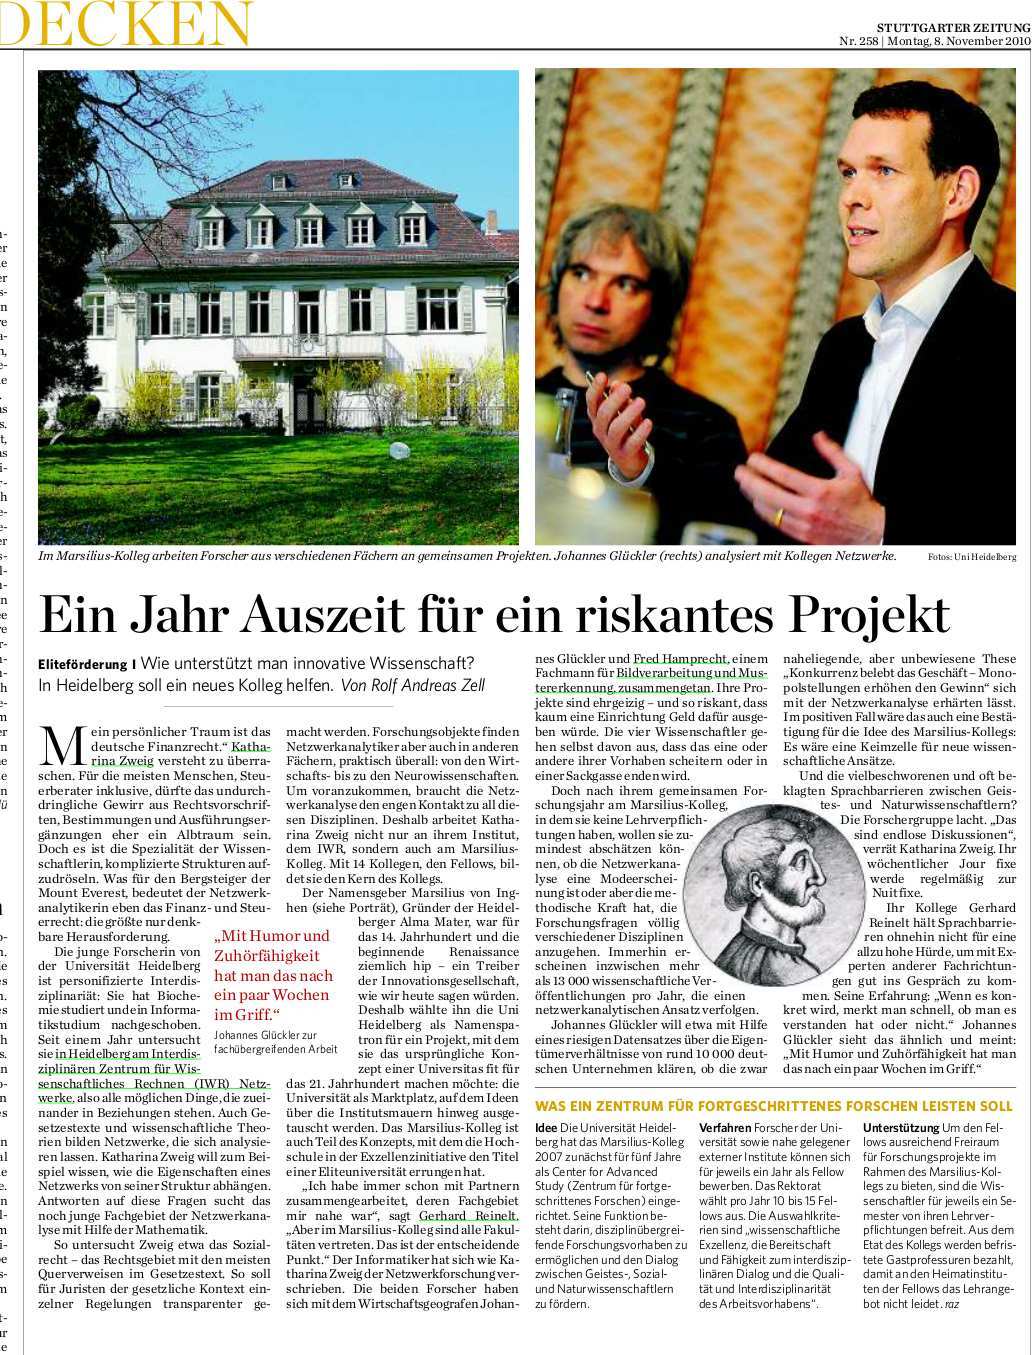 Ein Jahr Auszeit für ein riskantes Projekt, Stuttgarter Zeitung, 8. November 2010, S. 6